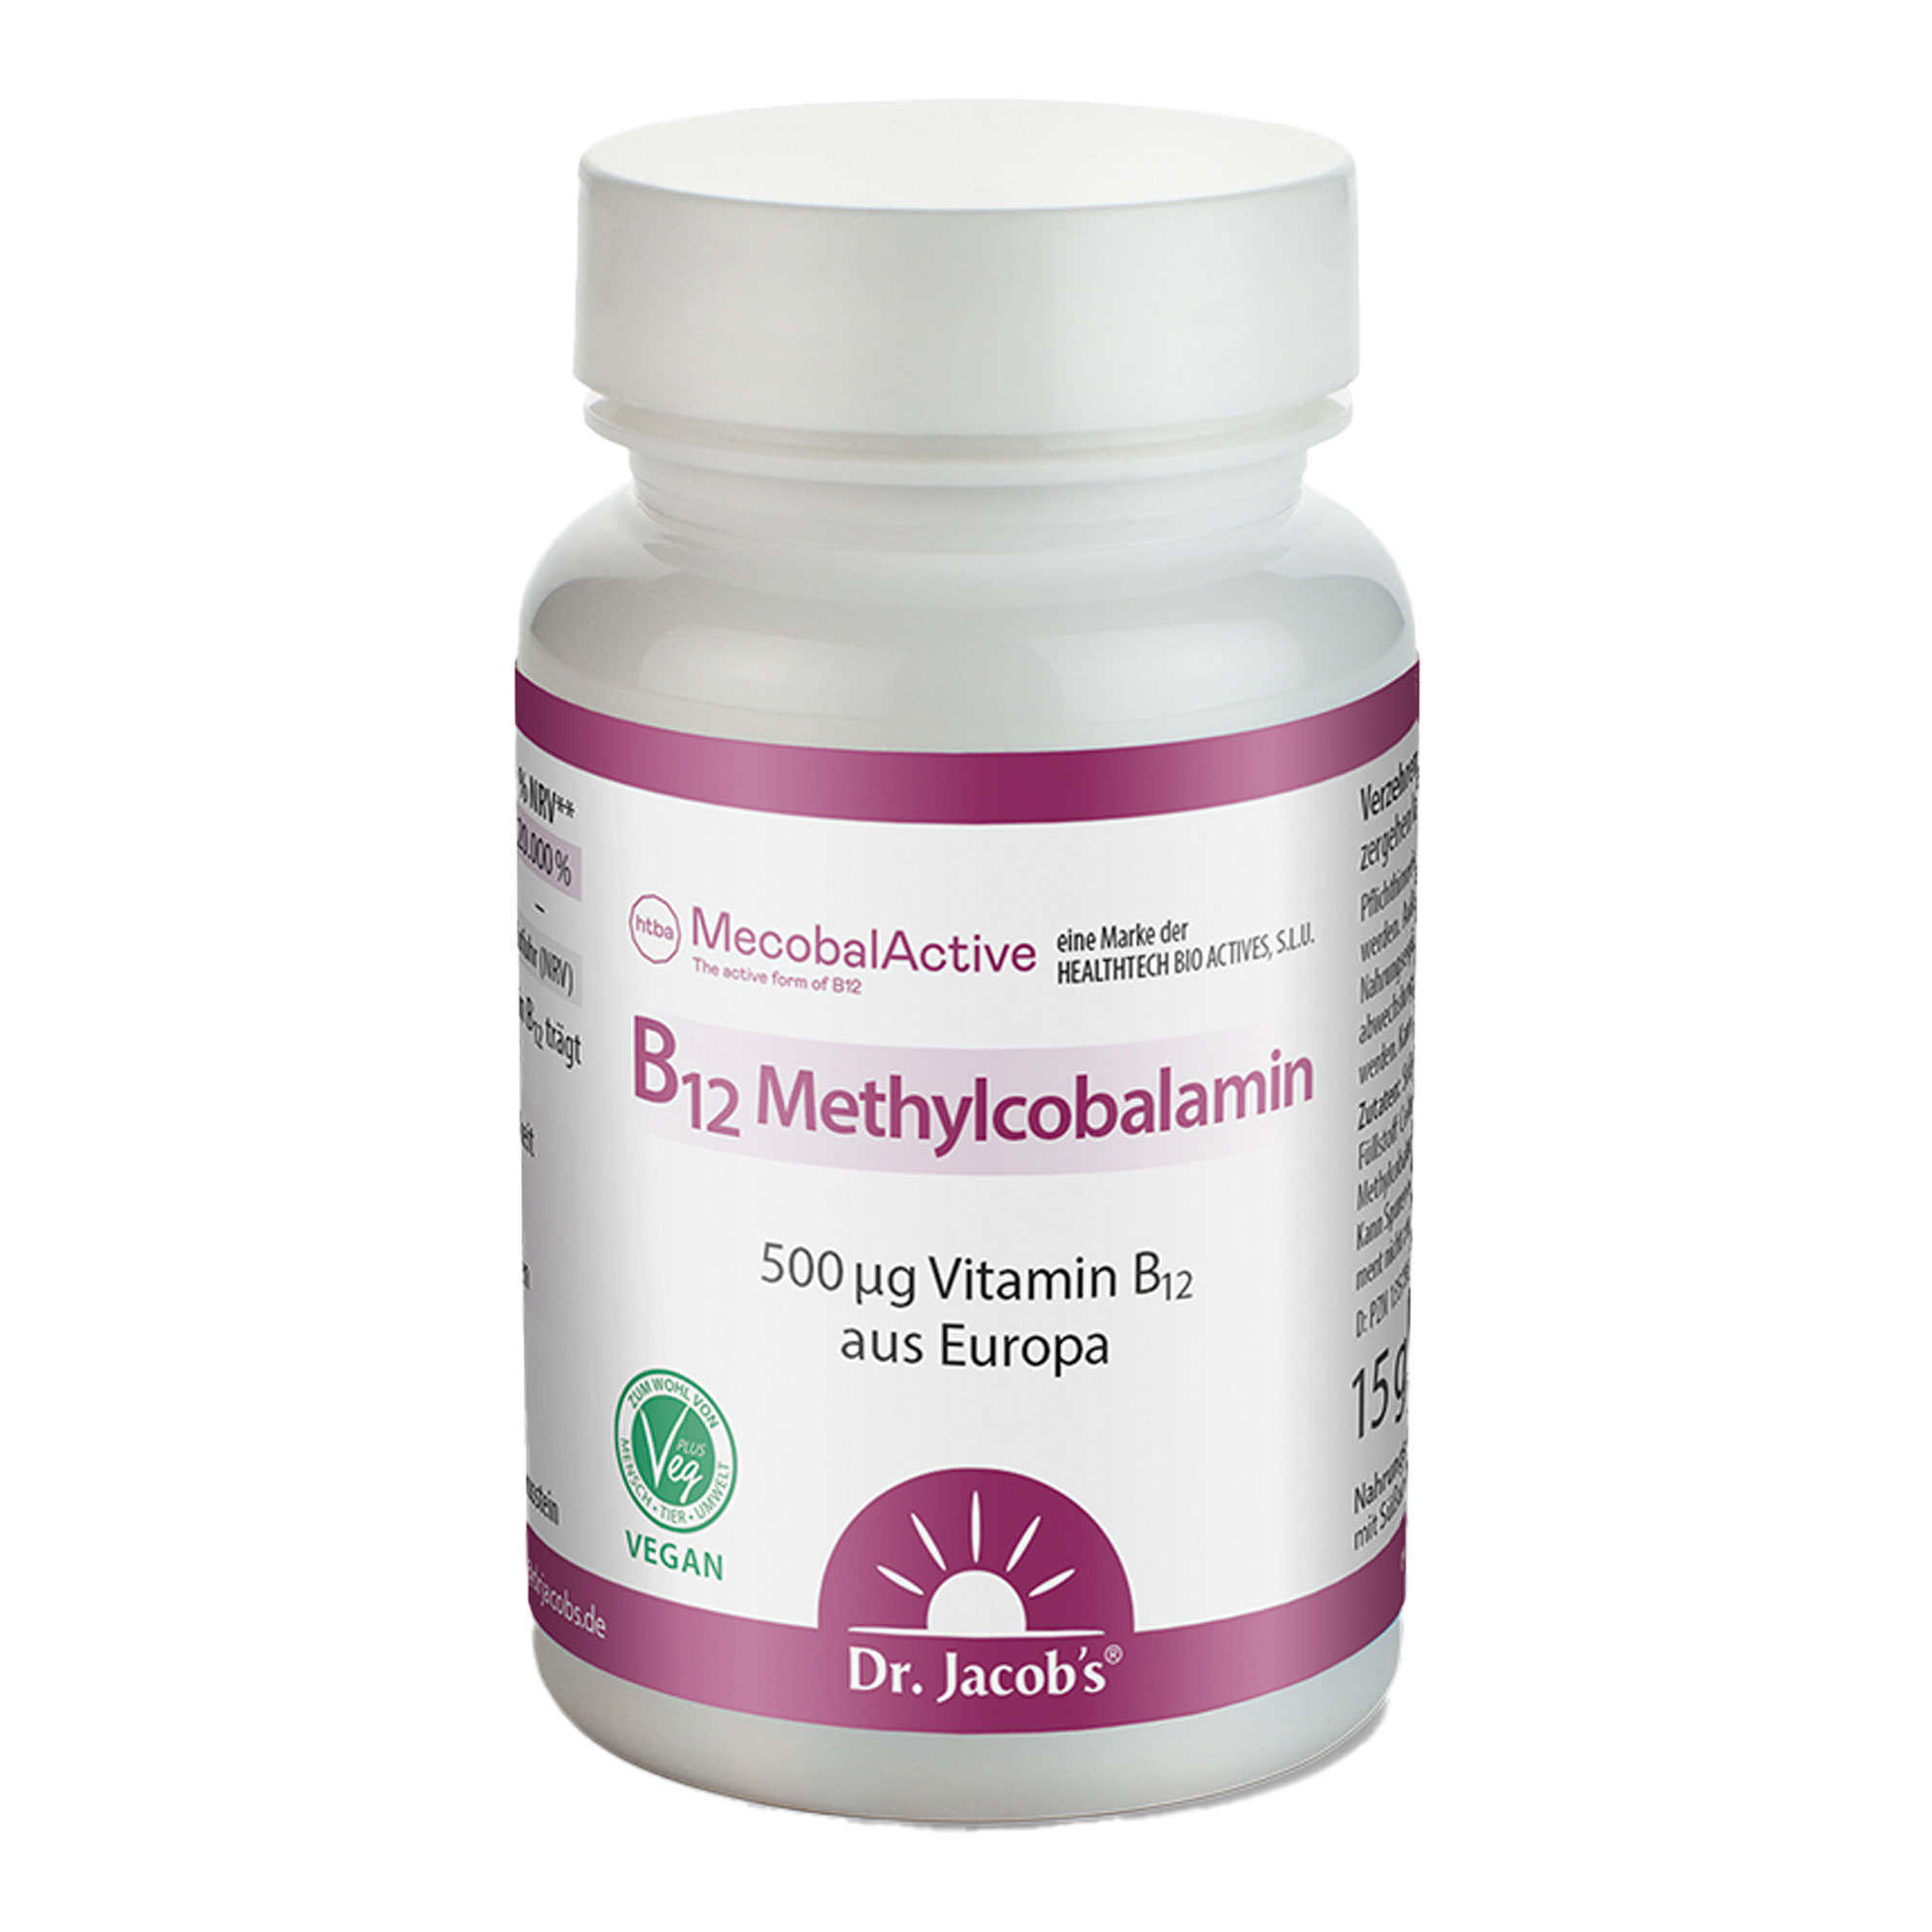 Nahrungsergänzungsmittel mit Vitamin B12 in Form von Methylcobalamin. Schmeckt dezent nach Kirsche.